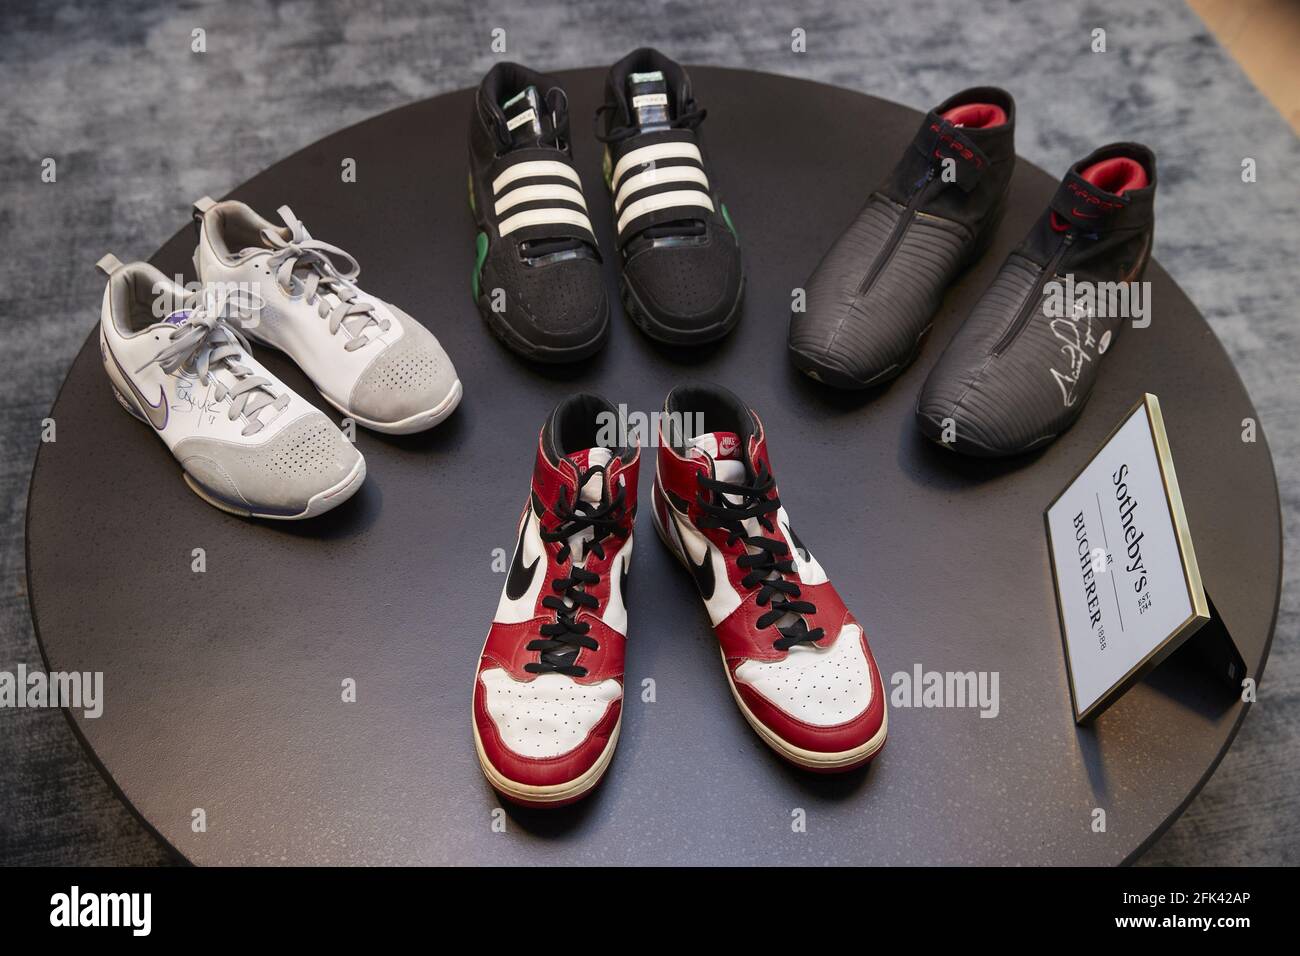 Los zapatos de Steve Nash, 'Air Jordan 1' de Michael Jordan, un par de  Adidas de Kevin Garnet y Nike 'Air Pippen V' de Scottie Pippen se muestran  en una vista previa